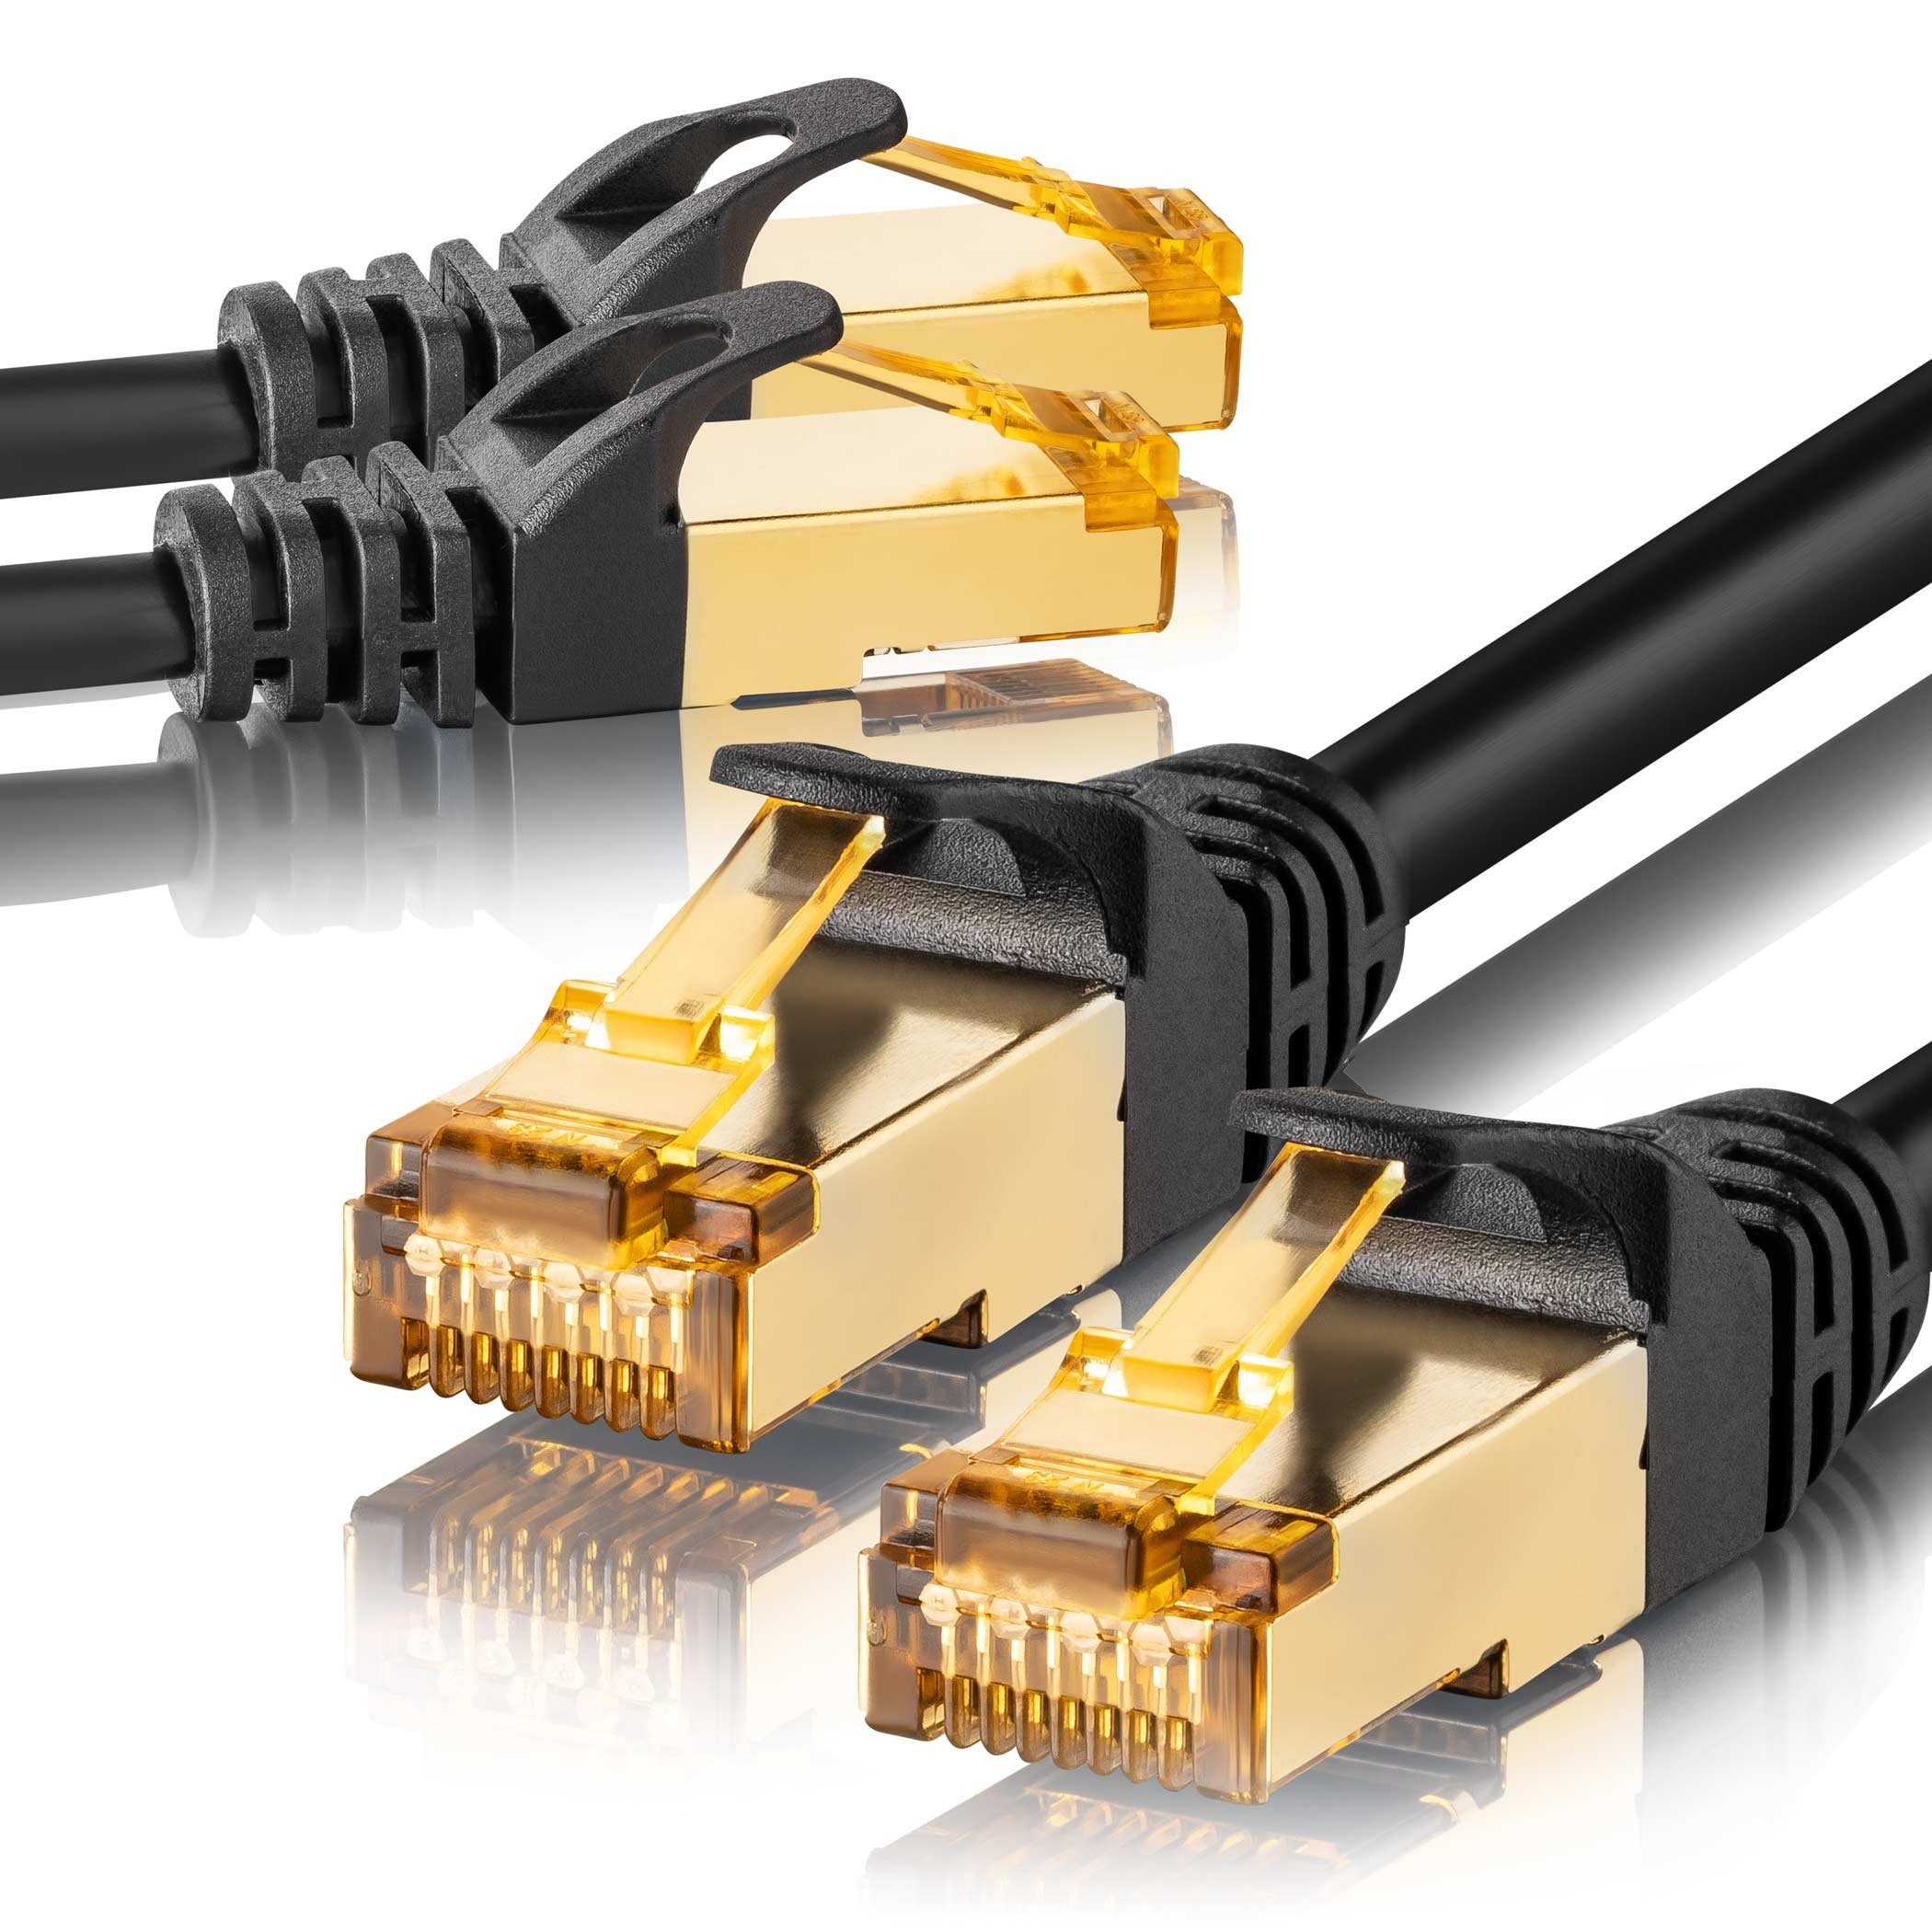 SEBSON »2x LAN Kabel 50cm CAT 7 rund, Netzwerkabel 10 Gbit/s, RJ45 Stecker  für Router, PC, TV, NAS, Spielekonsolen - Ethernetkabel S-FTP abgeschirmt«  Netzkabel online kaufen | OTTO